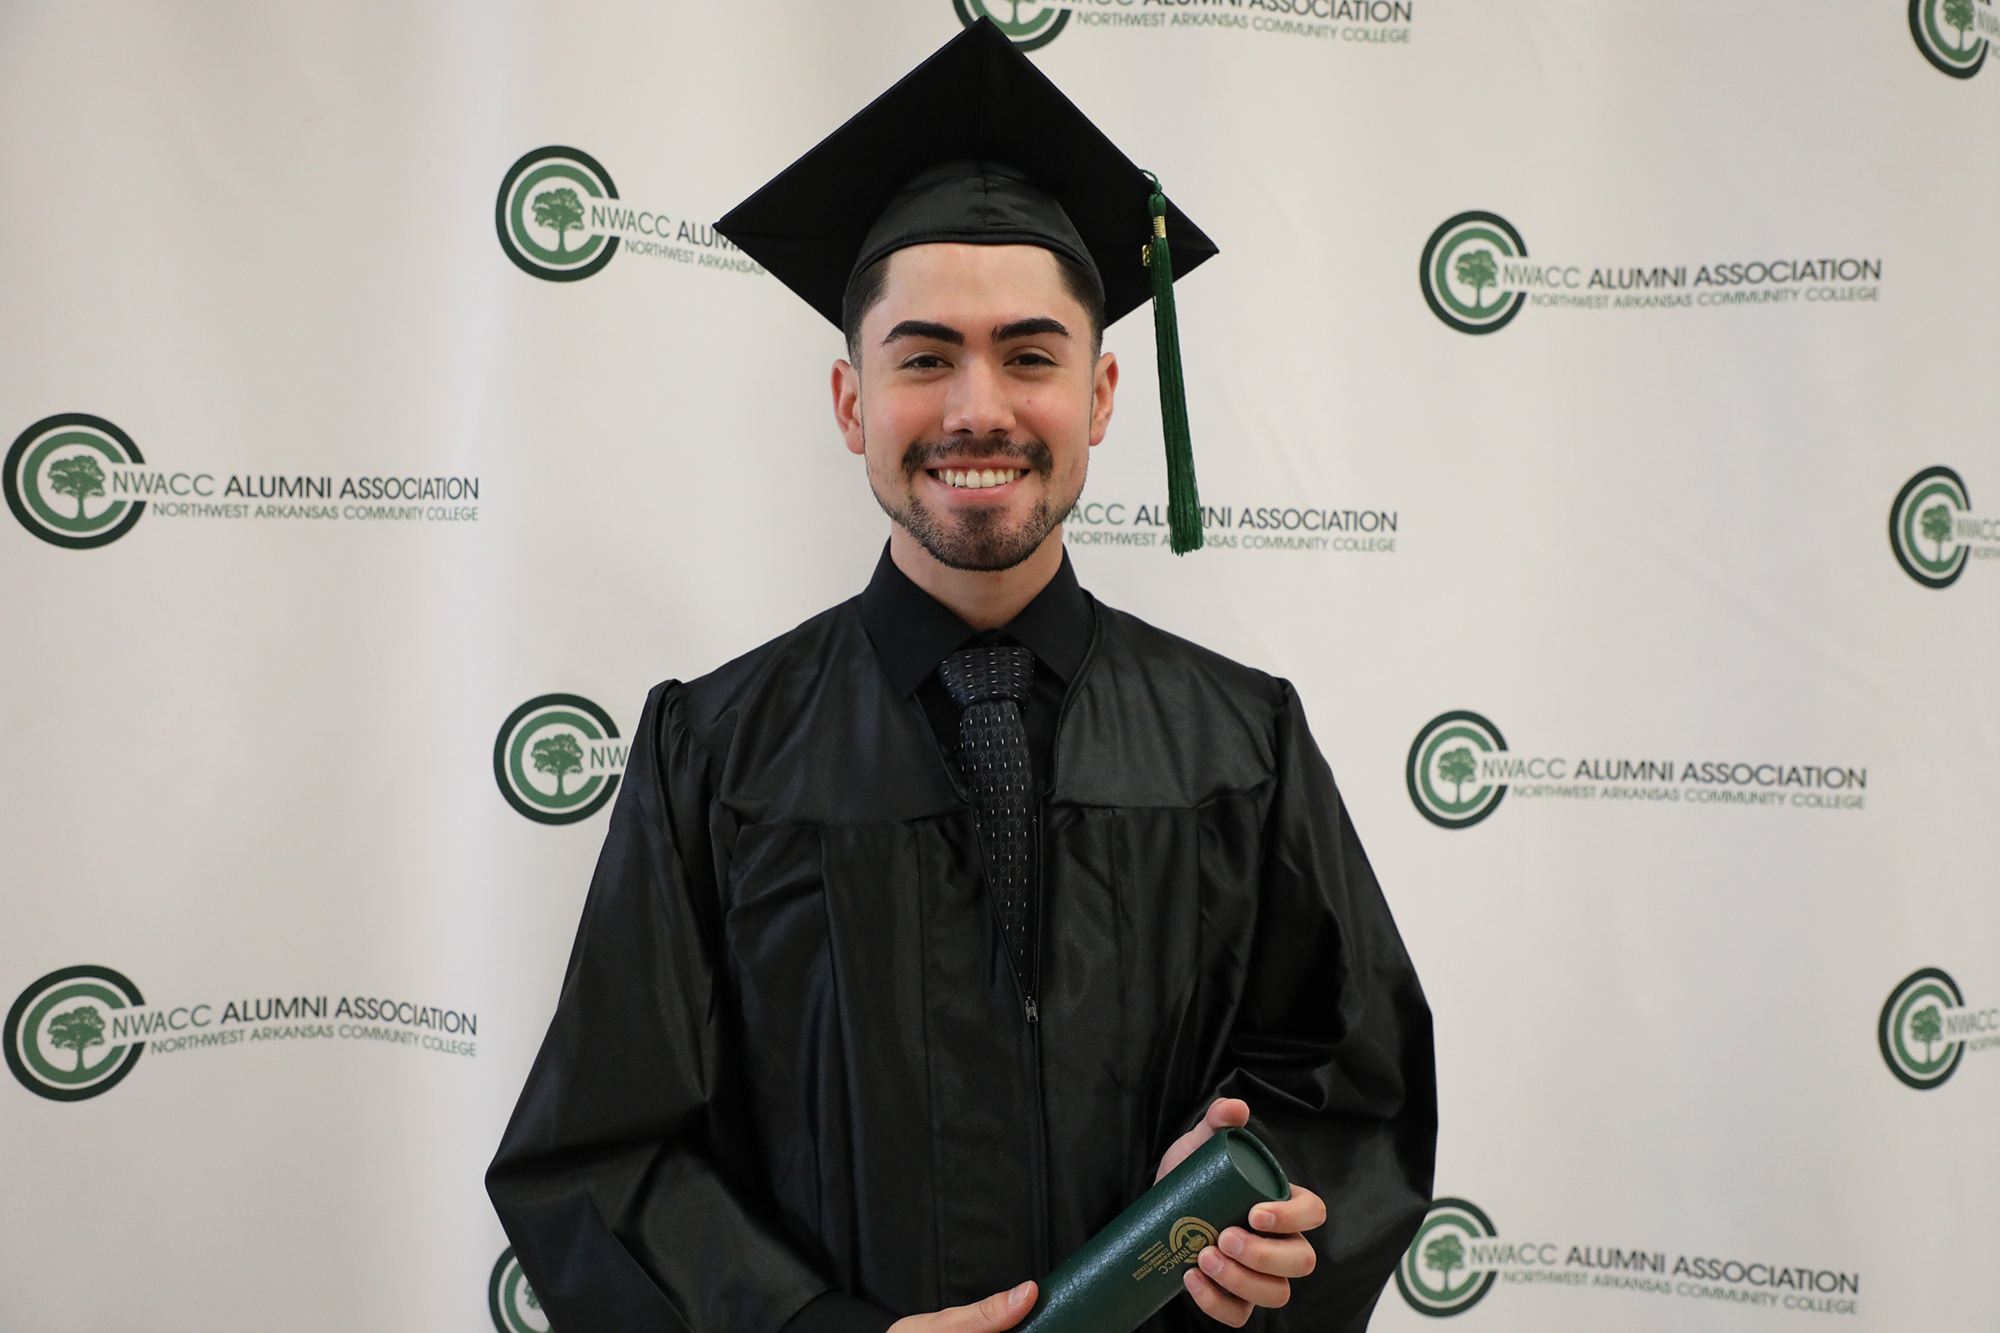 Male NWACC Graduate